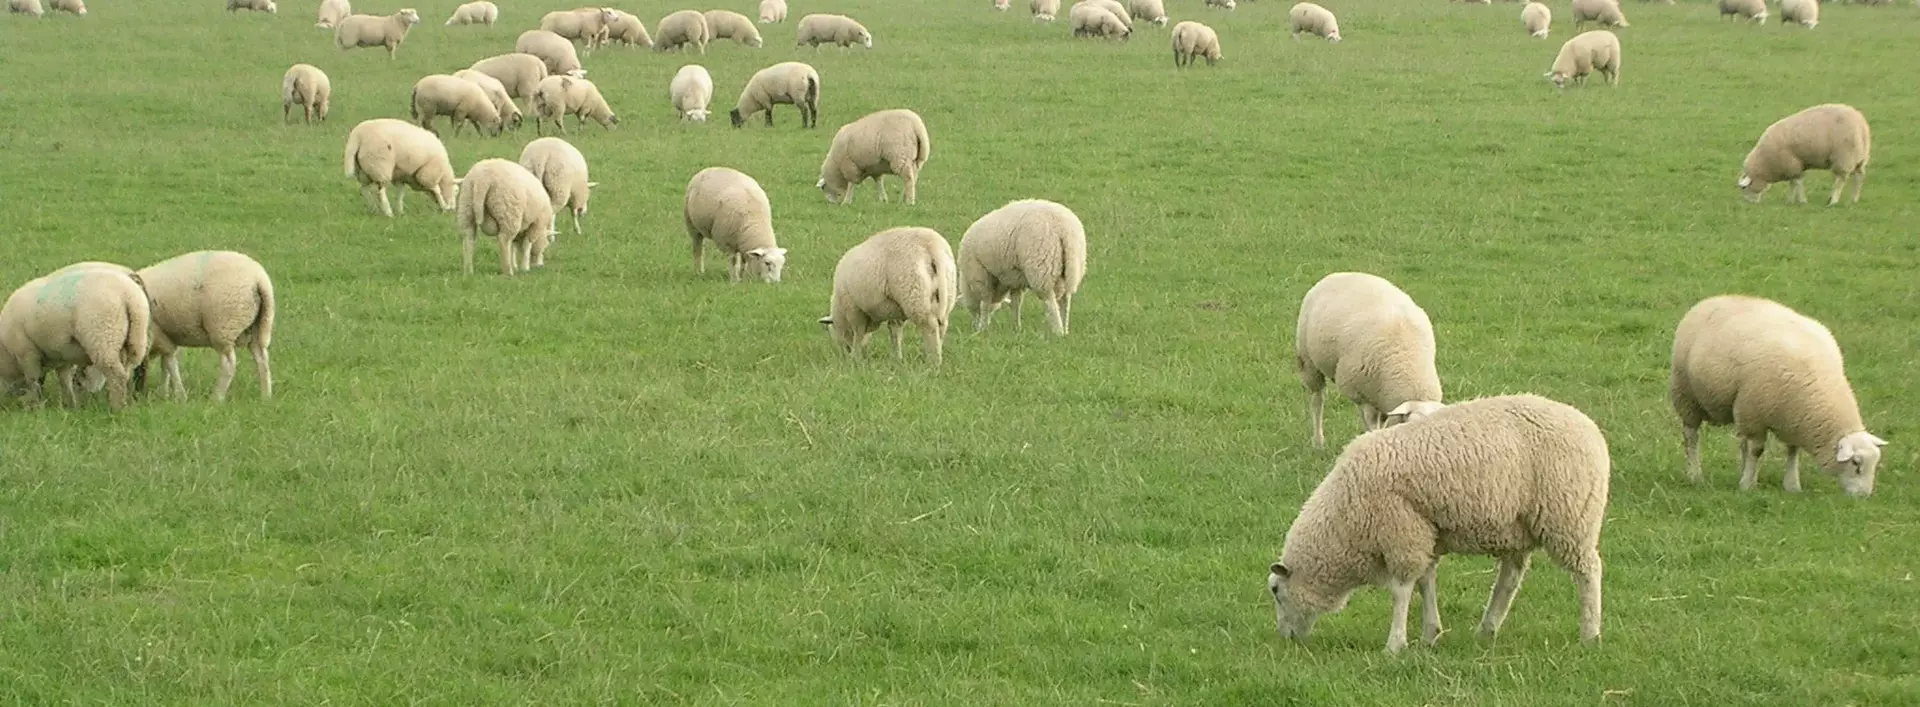 Schafe der Schäferei Bährs weiden auf saftigen Weiden in Dithmarschen in Schleswig-Holstein.